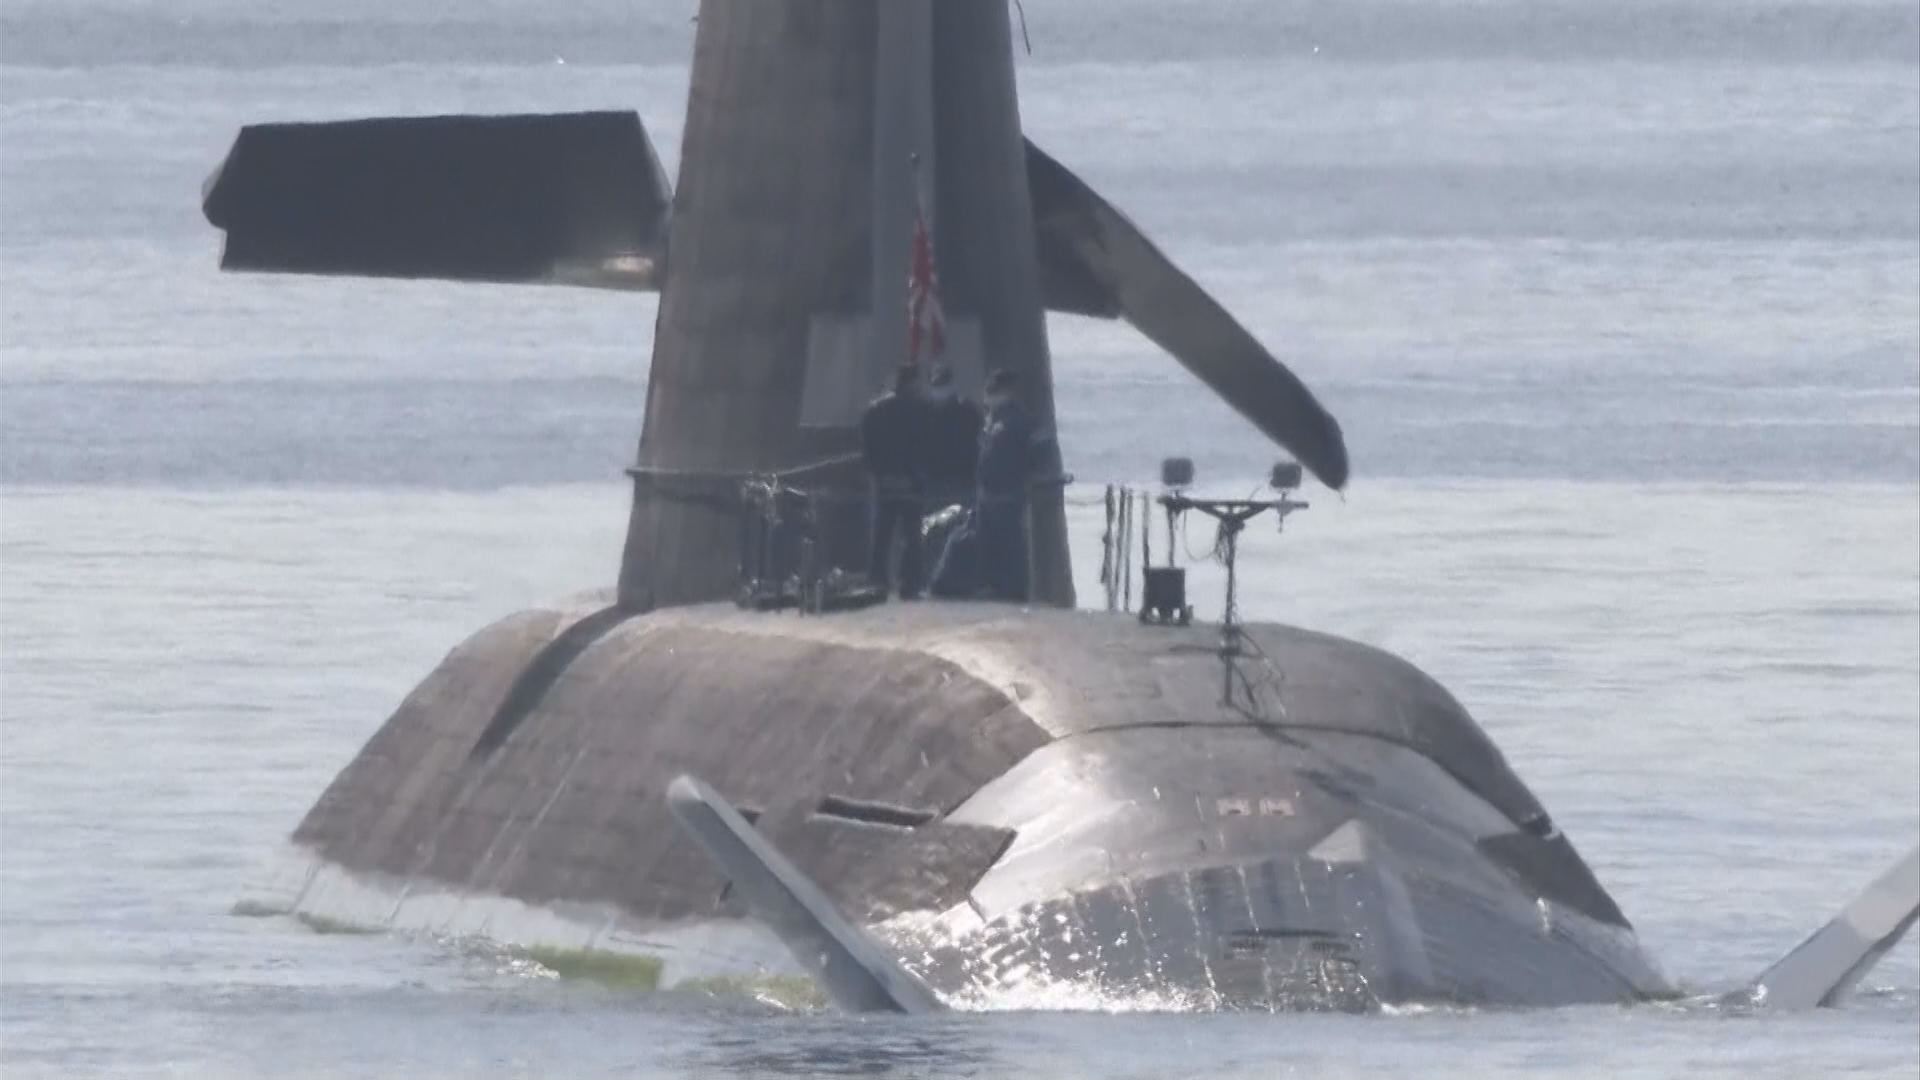  일본 고치현 앞바다에서 화물선과 부딪힌 후 파손된 ‘소류’ 잠수함, NHK 캡처